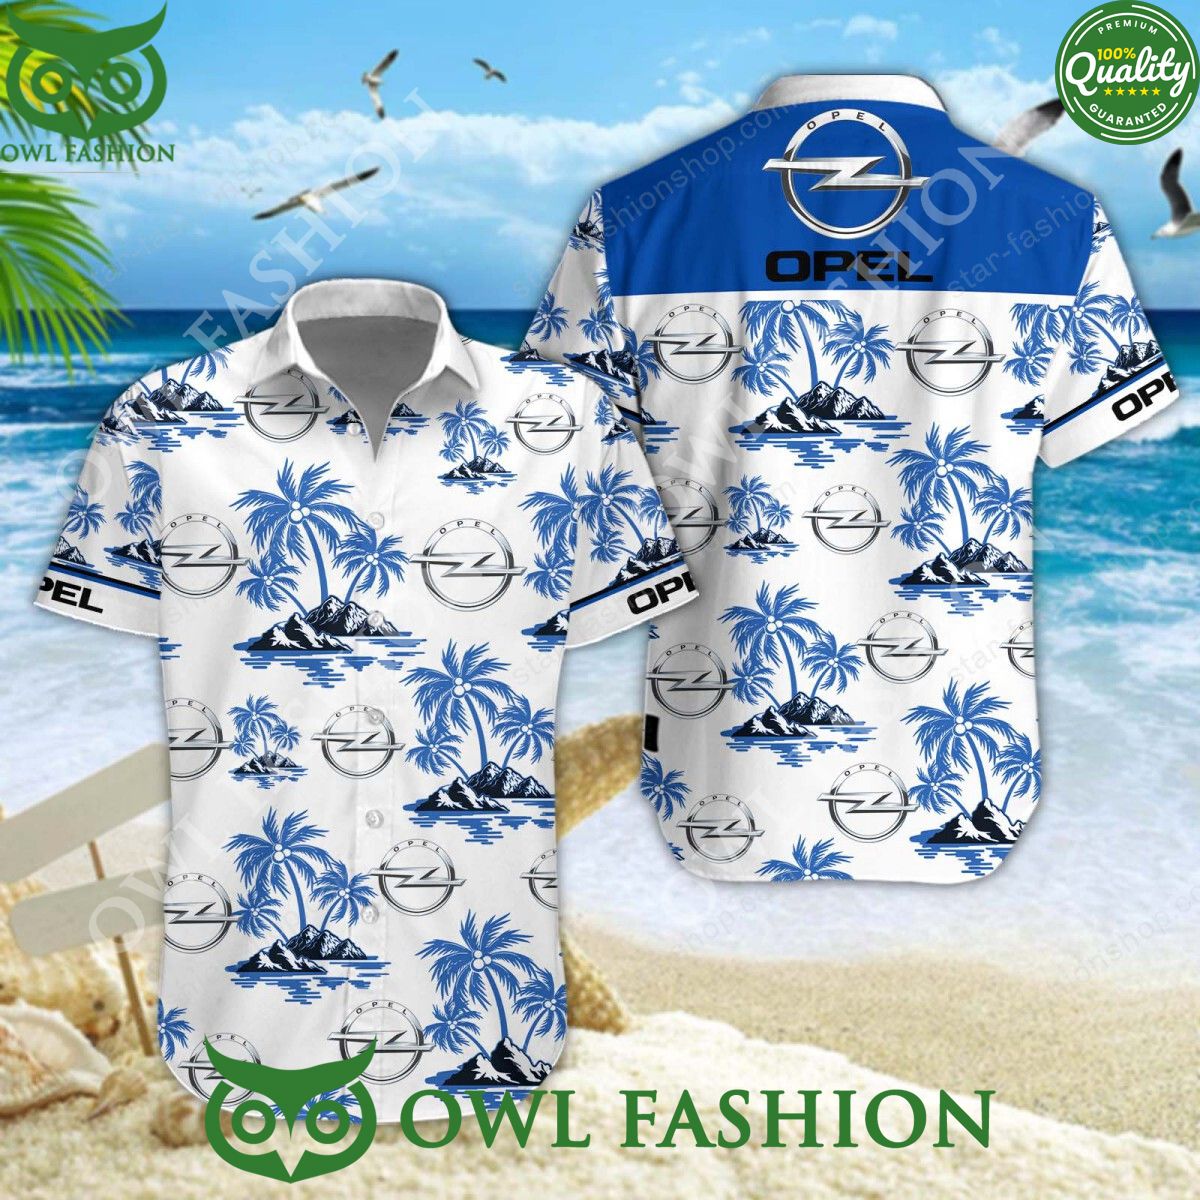 opel german automobile manufacturer limited hawaiian shirt shorts 1 S7jM6.jpg